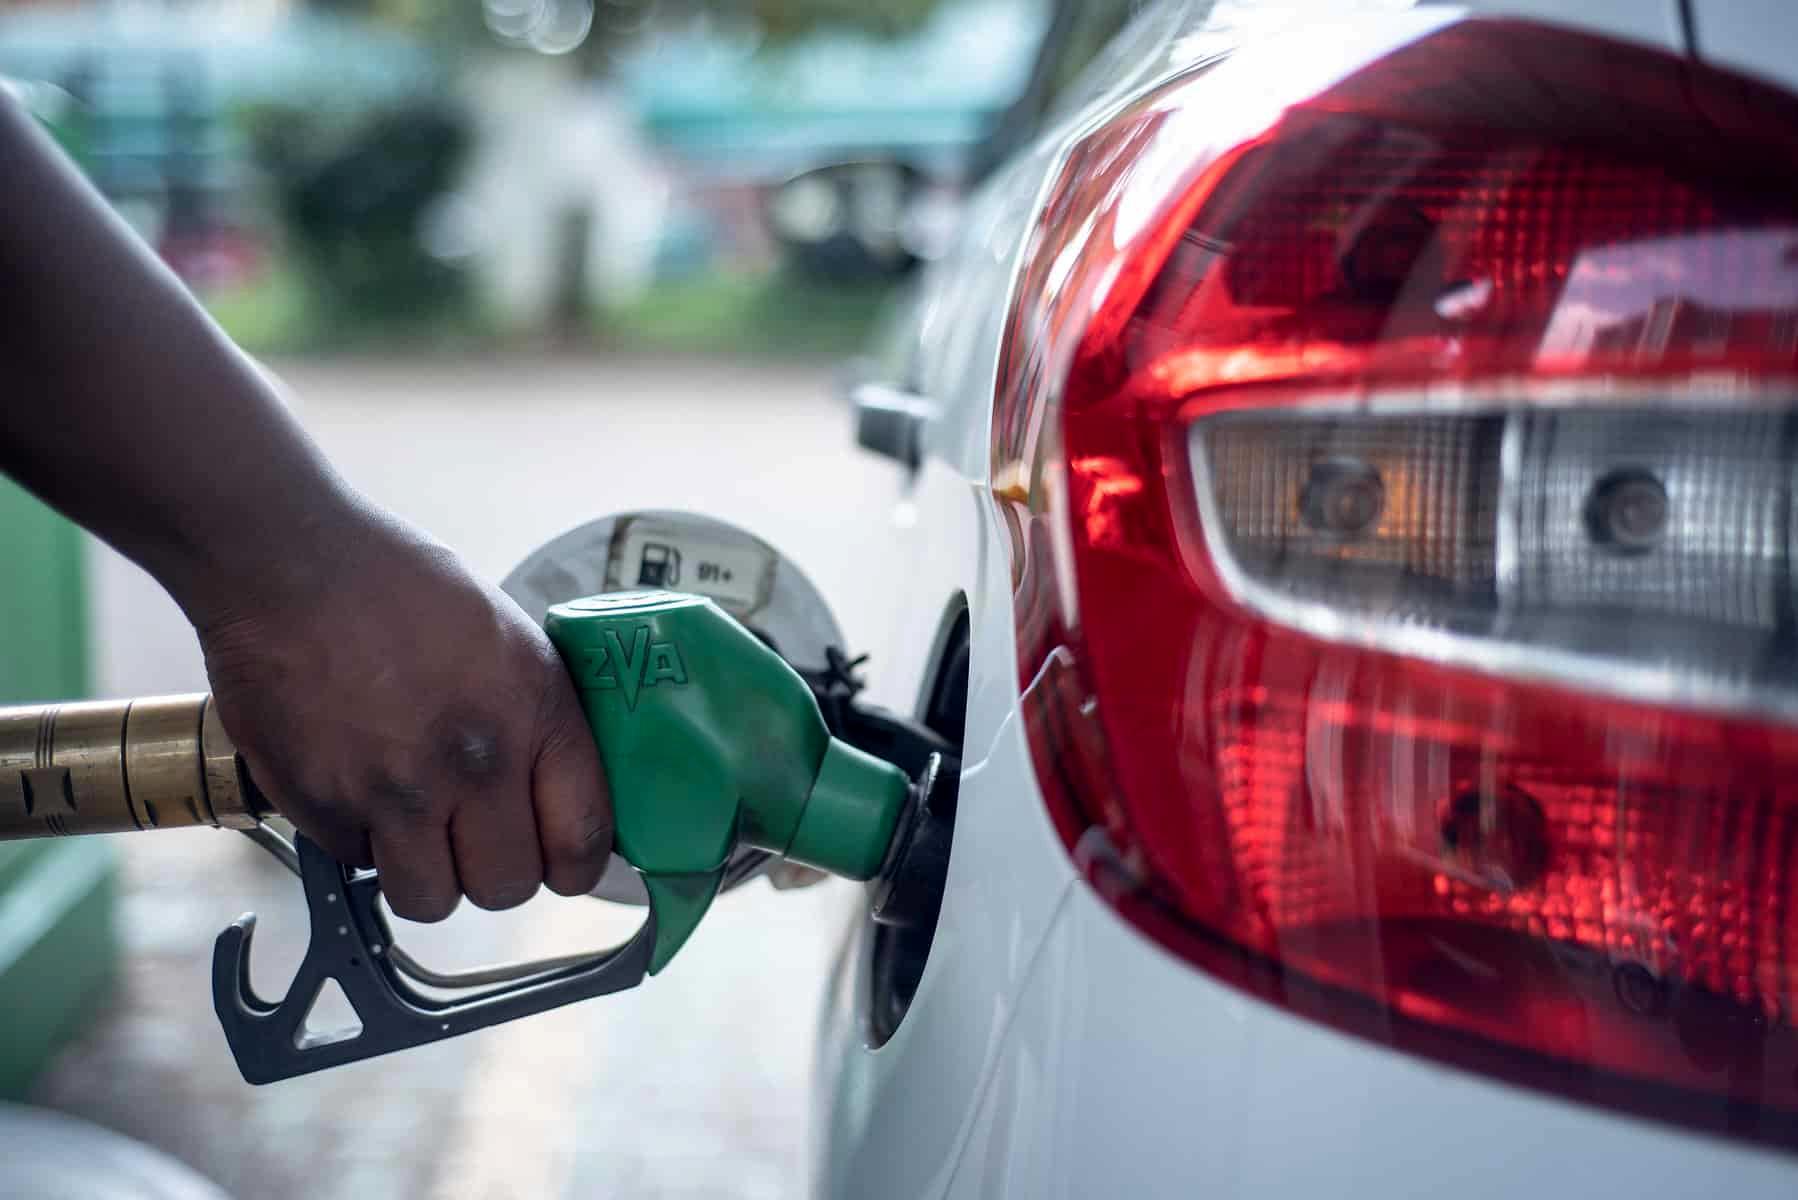 قیمت و نحوه سهمیه بندی بنزین تغییر می کند؟